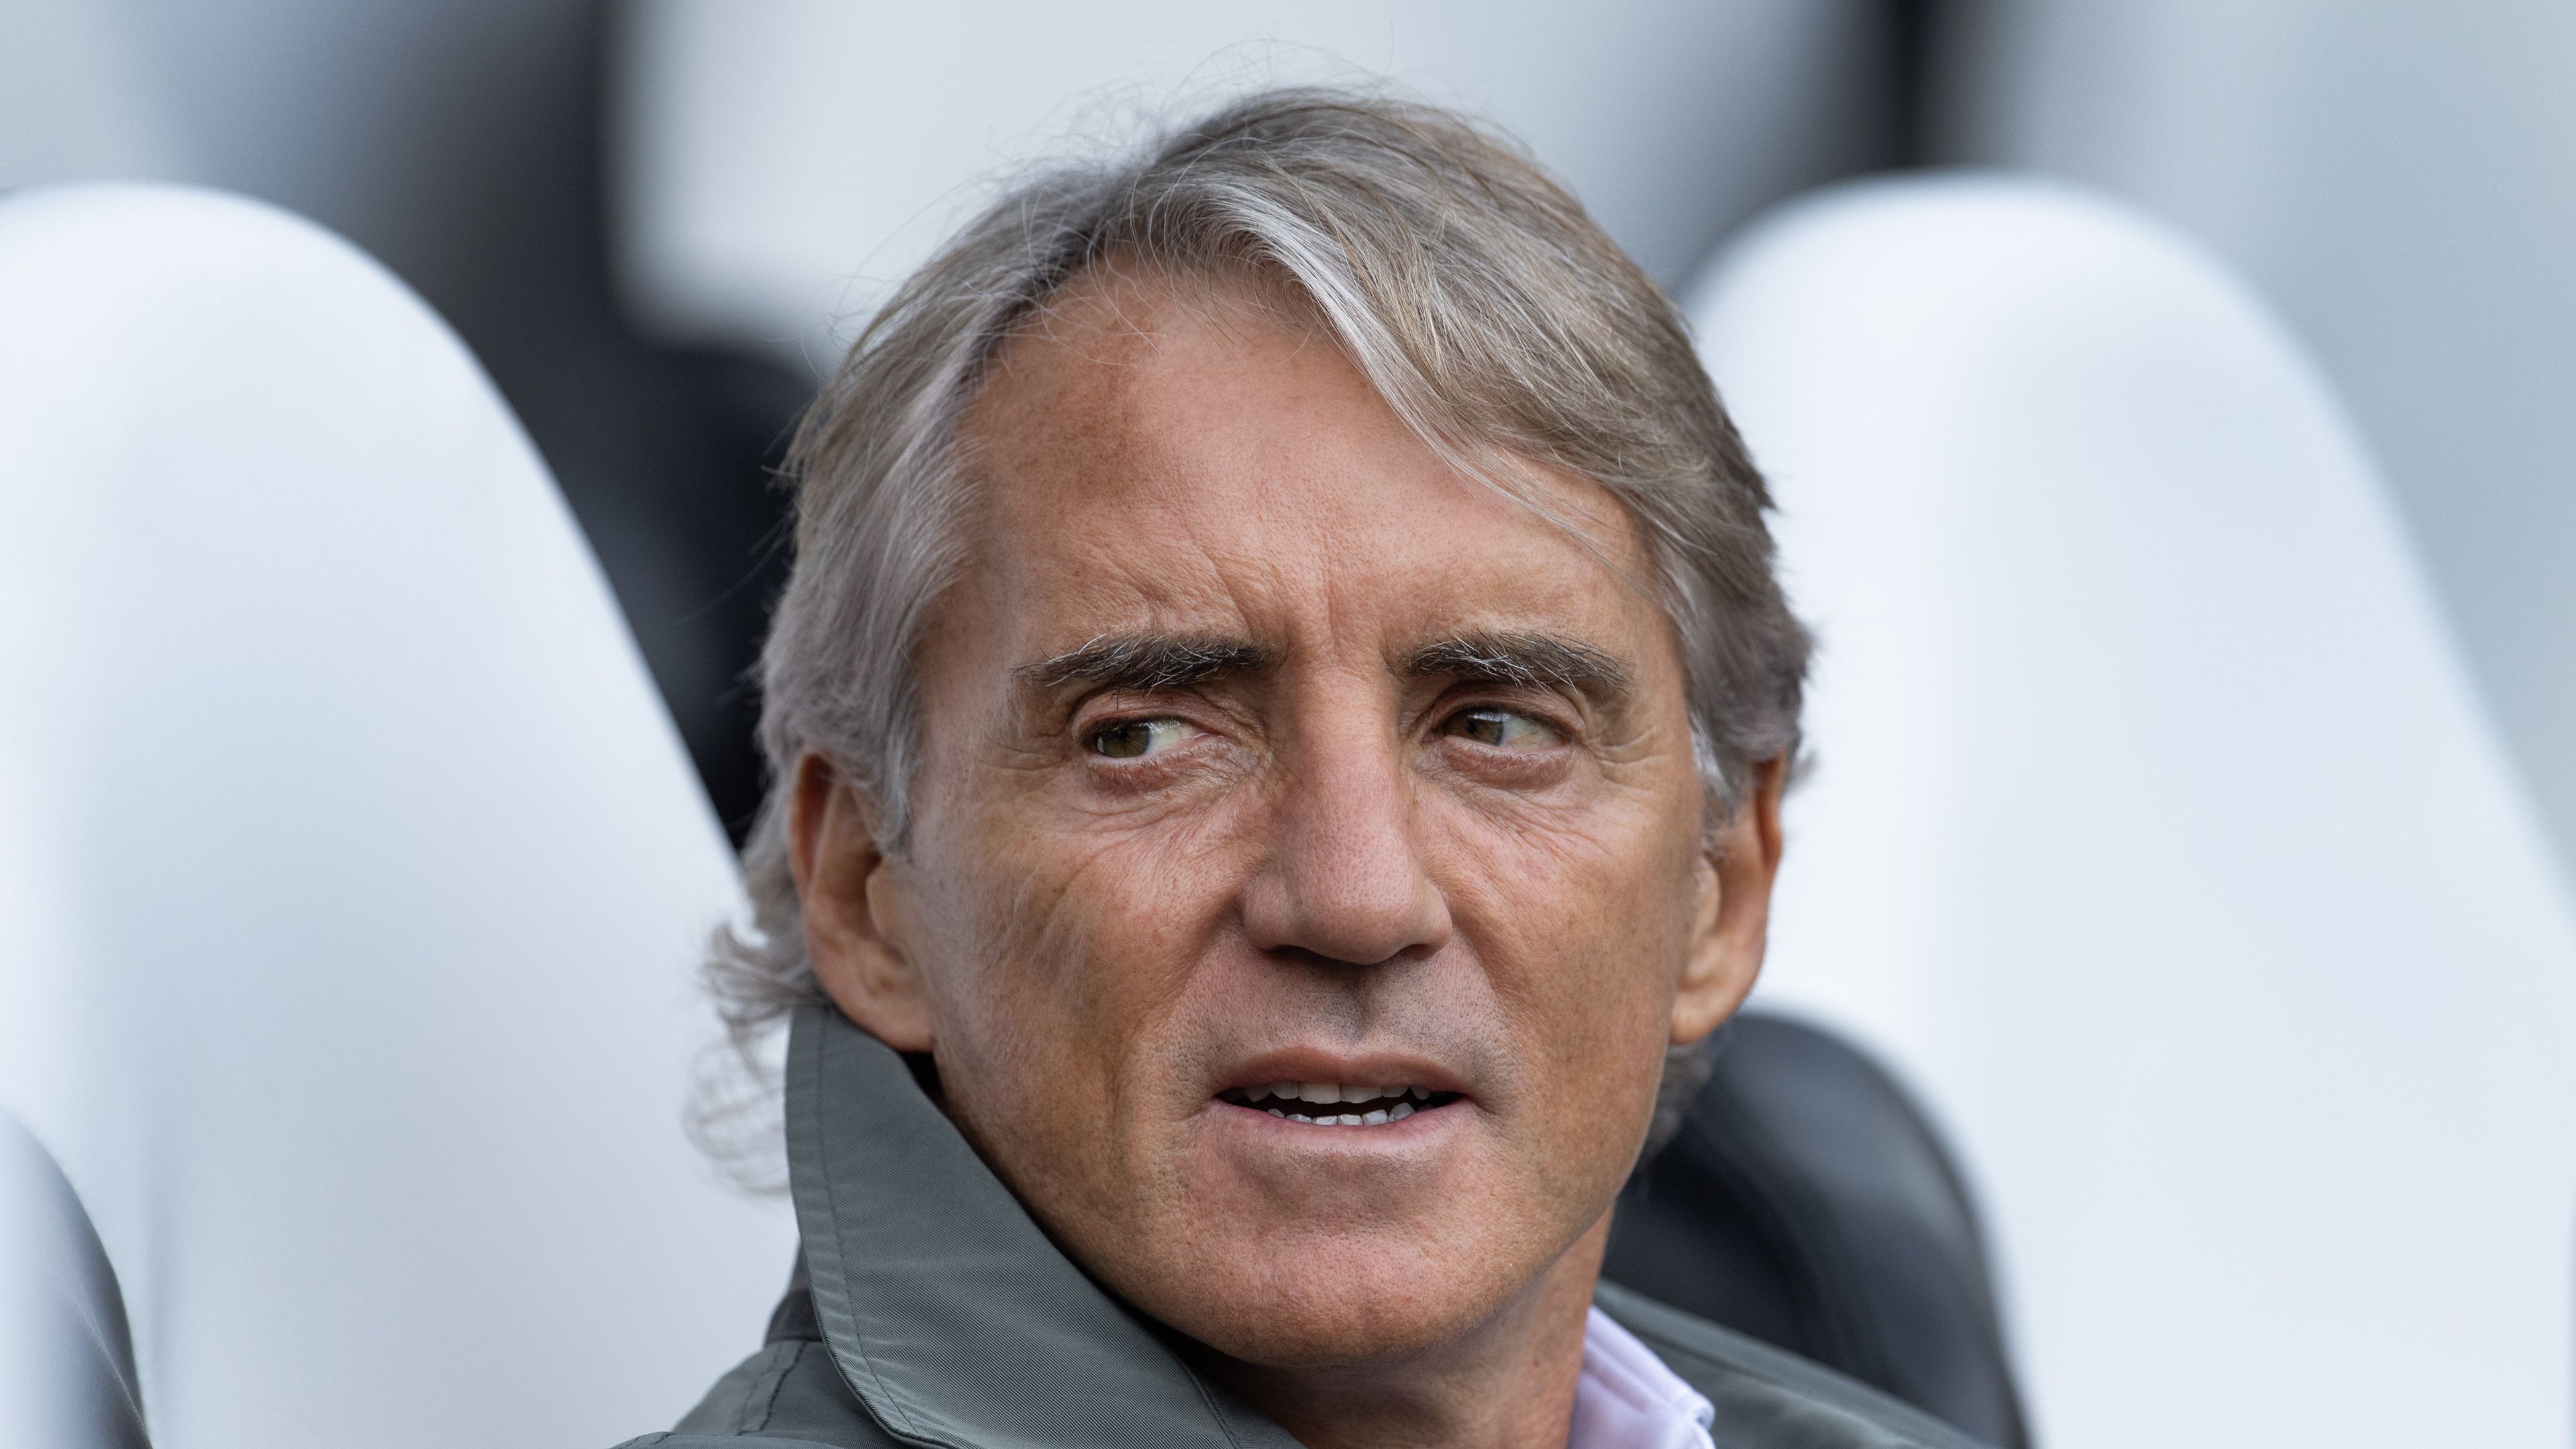 Botrány a kontinenstornán: három játékos megtagadta a szereplést, Mancini kiakadt